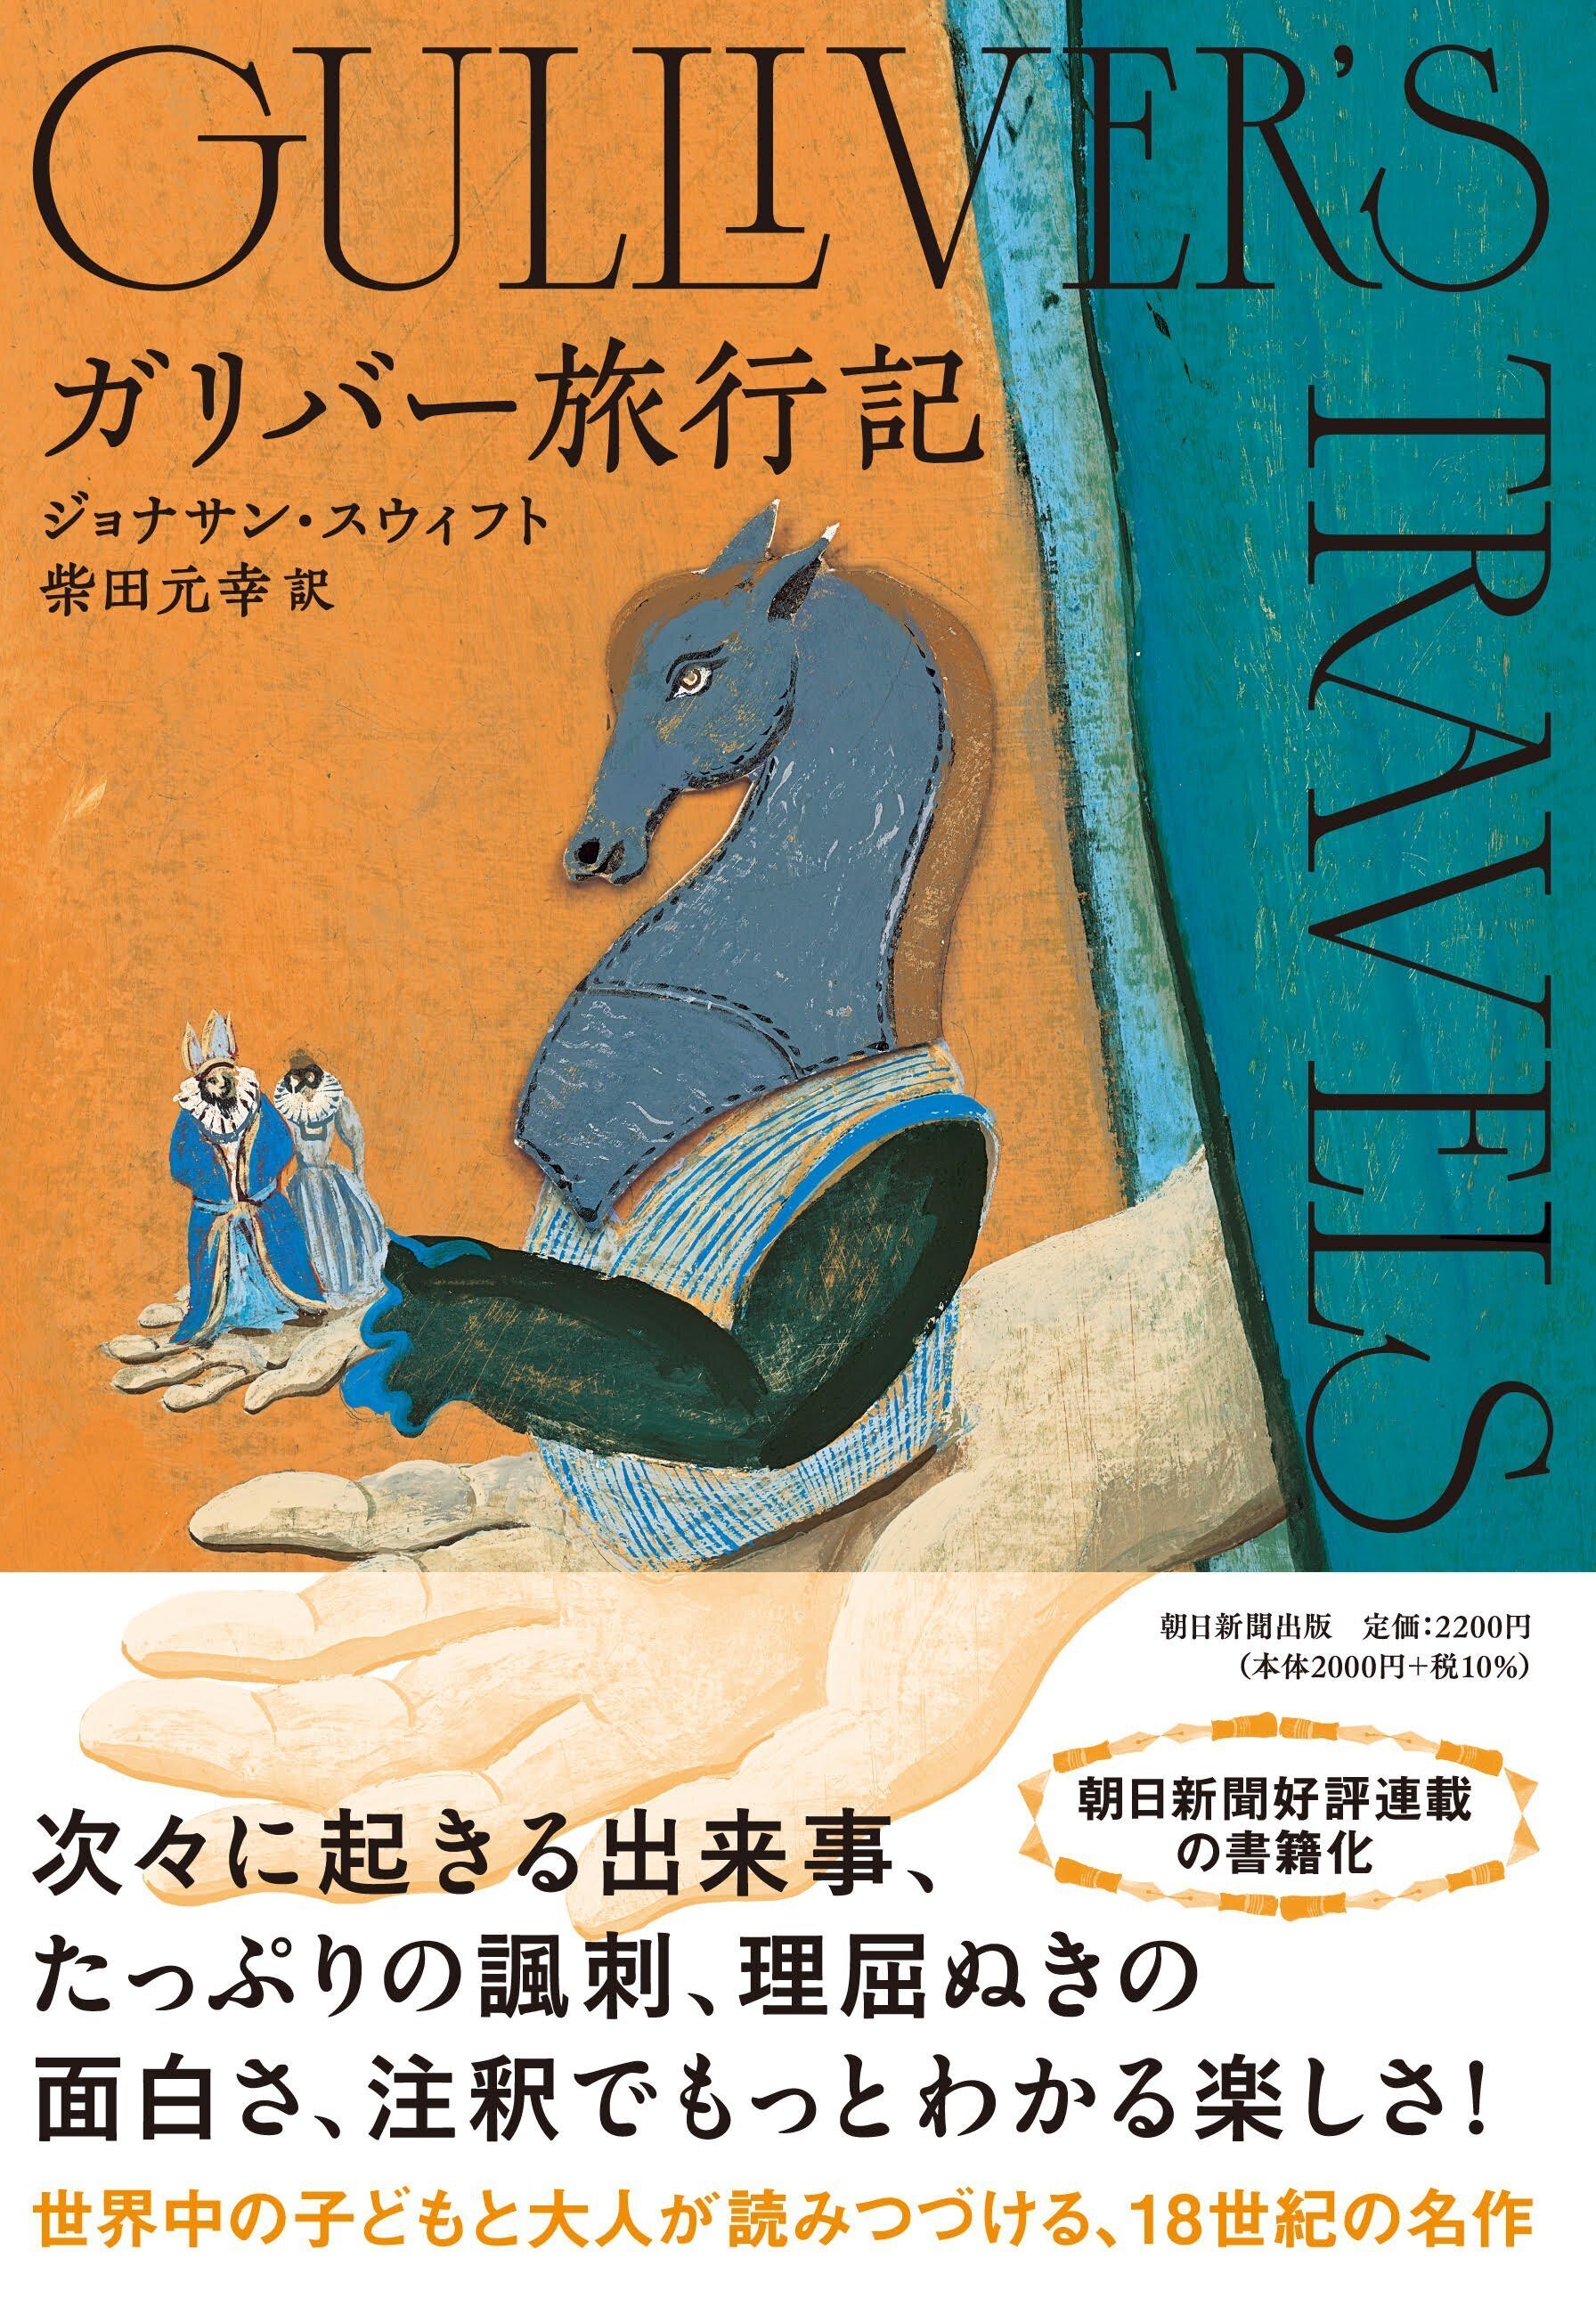 大人が読んで面白い『ガリバー旅行記』。柴田元幸さんのみごとな翻訳が